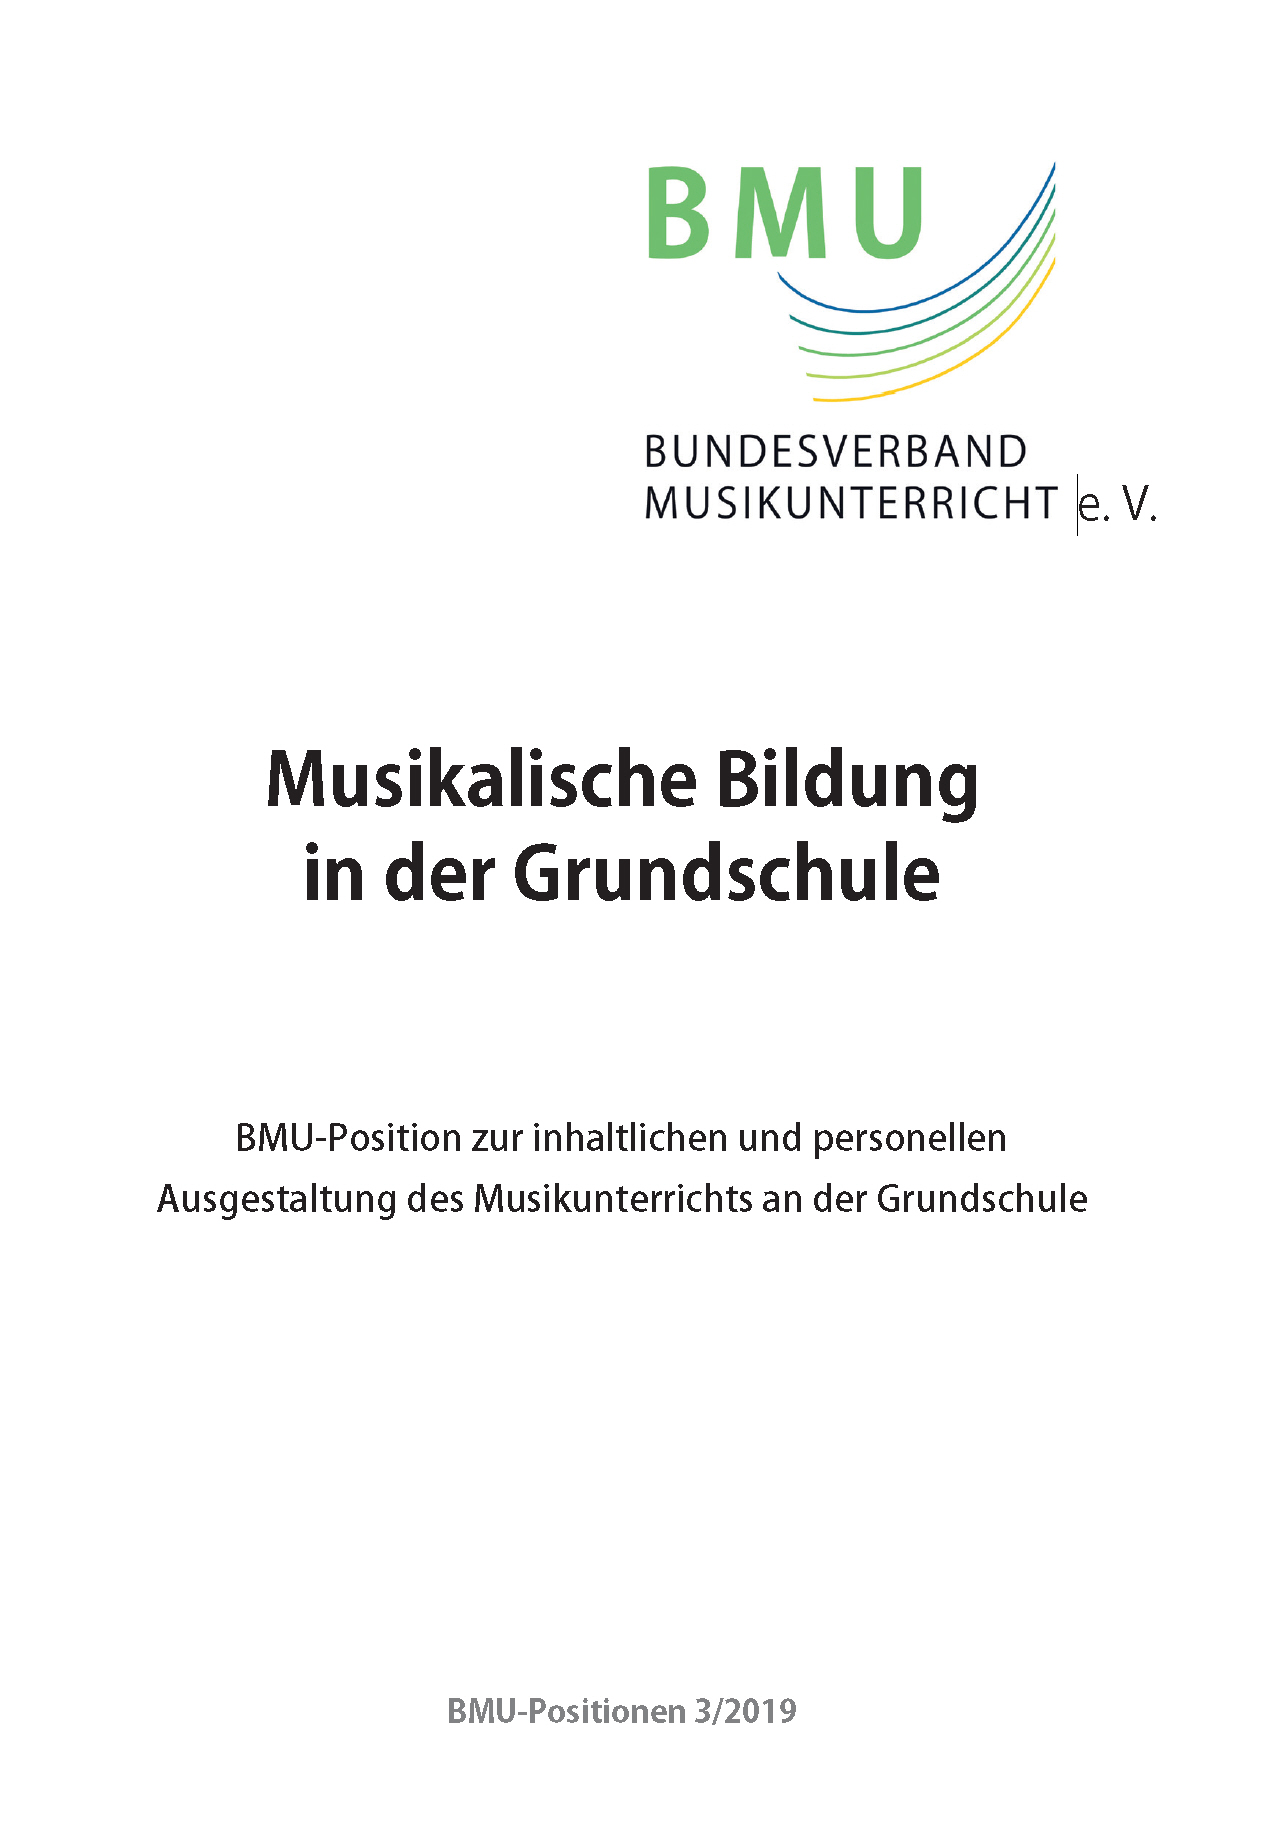 BMU-Positionspapier zur Musikalischen Bildung in der Grundschule von 2019